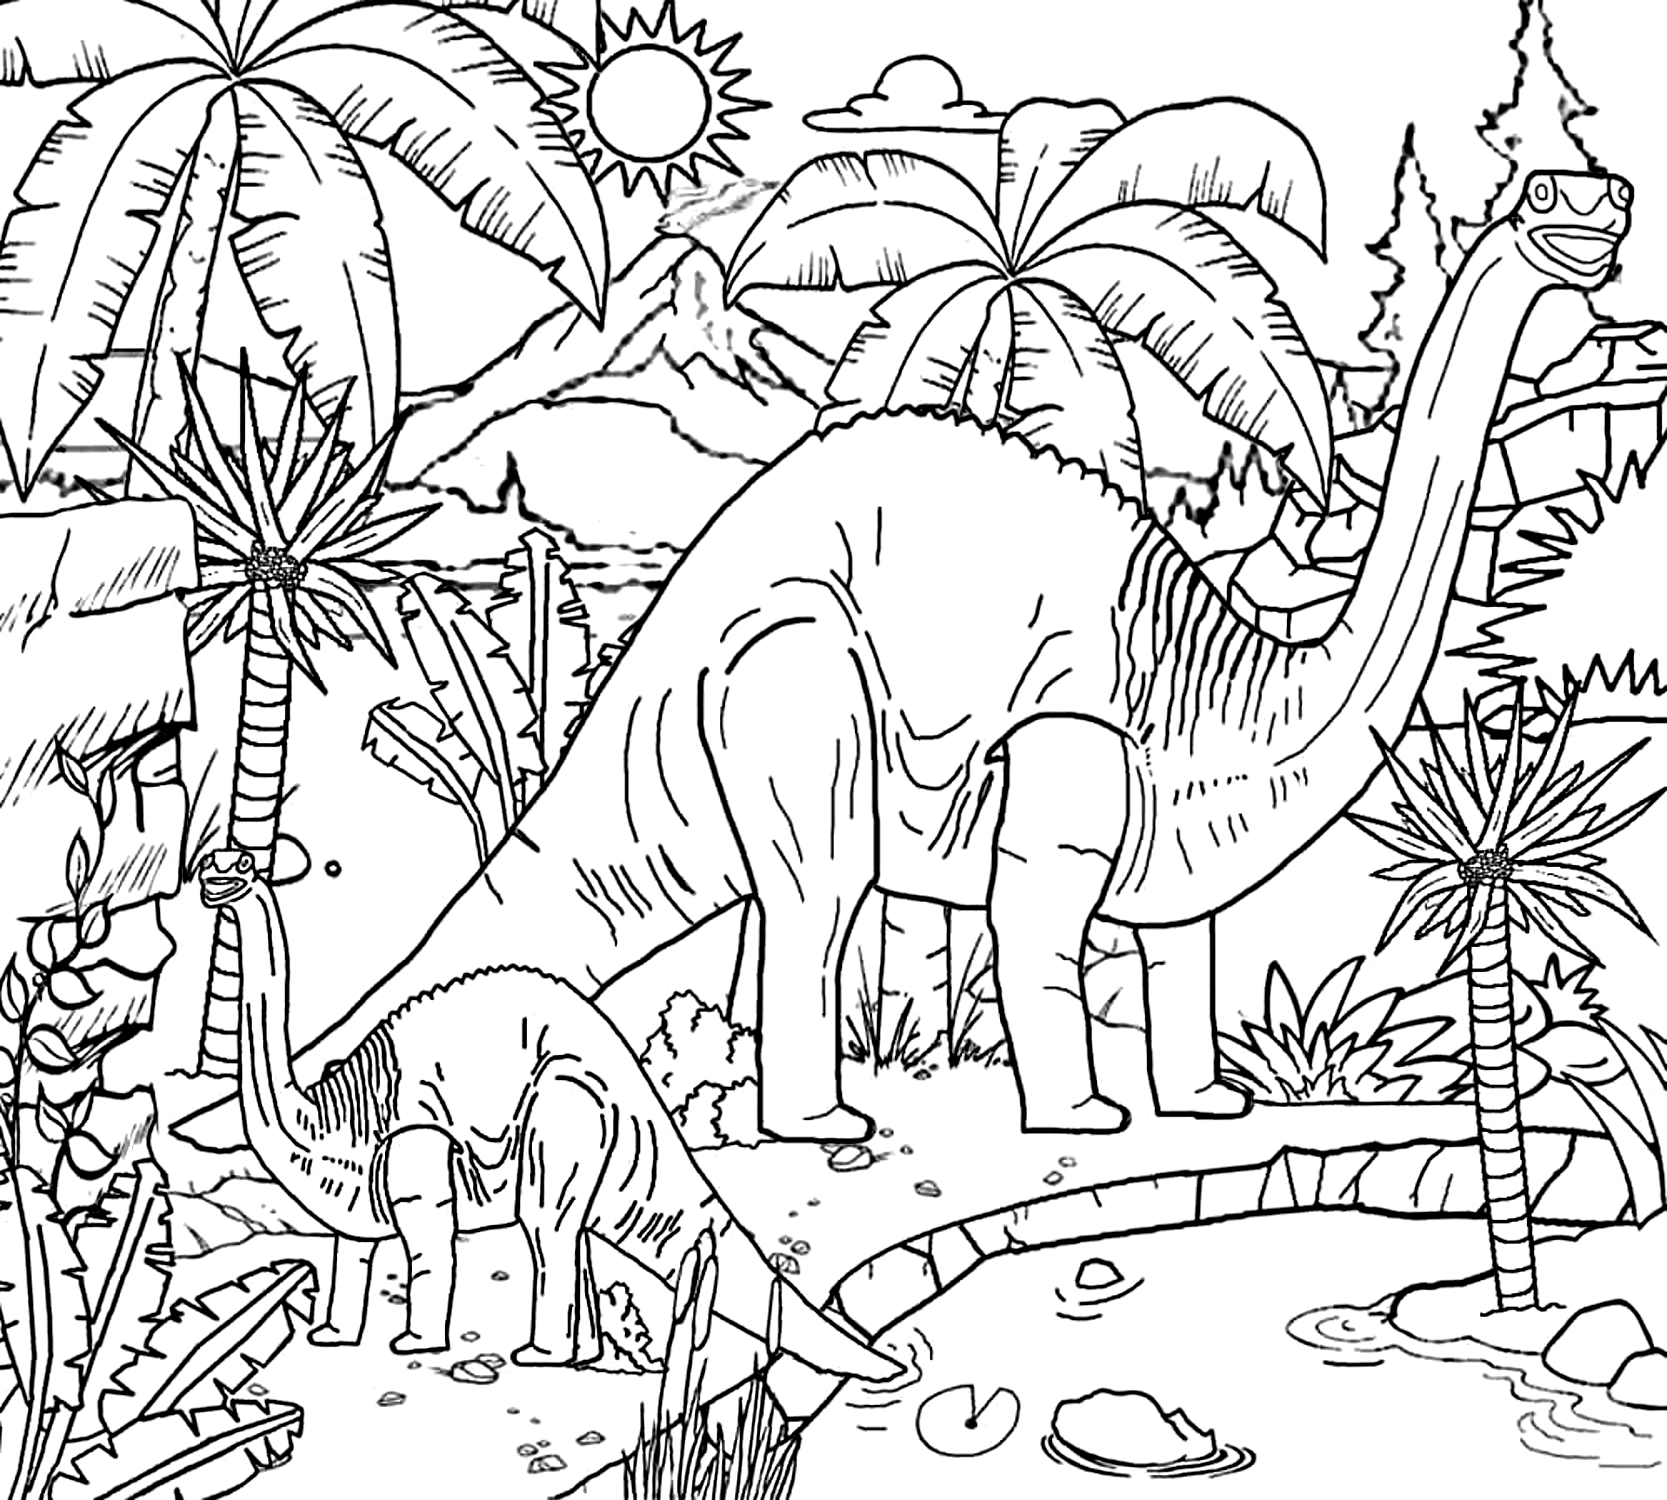 Dibujo 02 de Jurassic World para imprimir y colorear